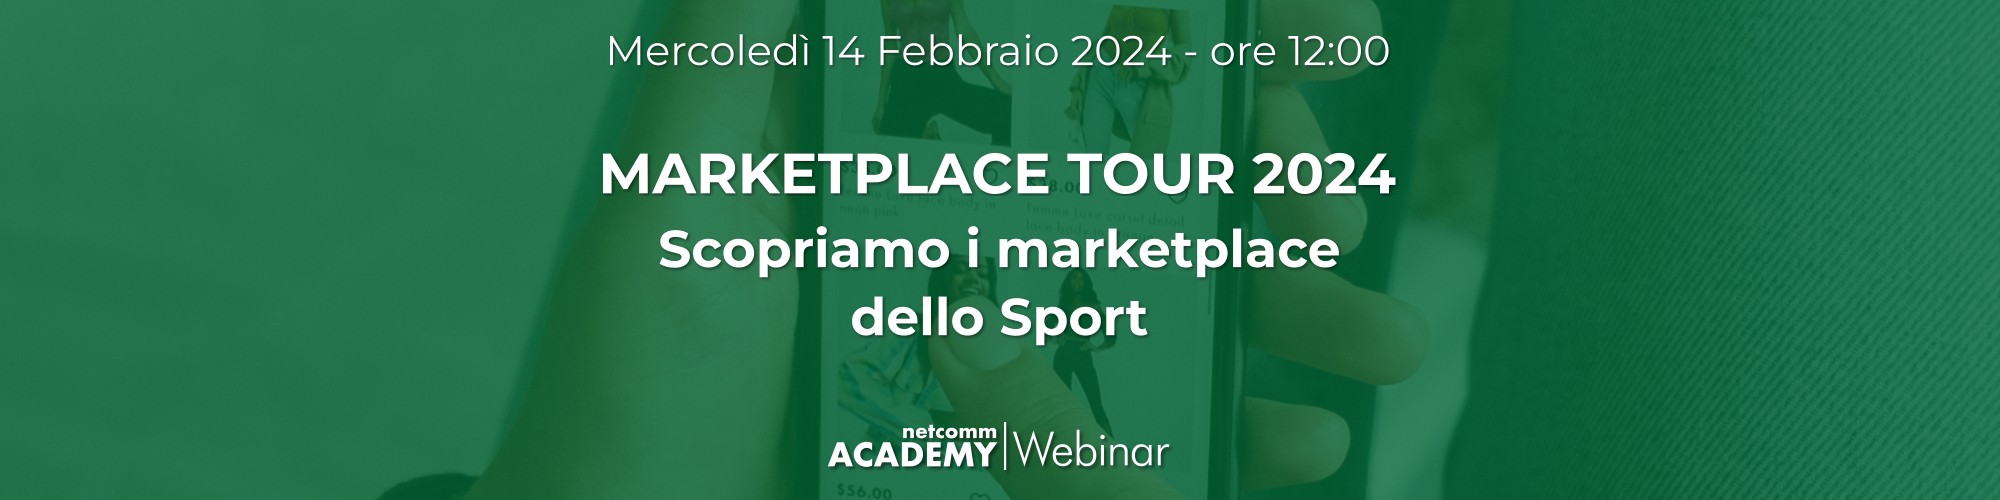 marketplace tour 2024 scopriamo i marketplace dello sport